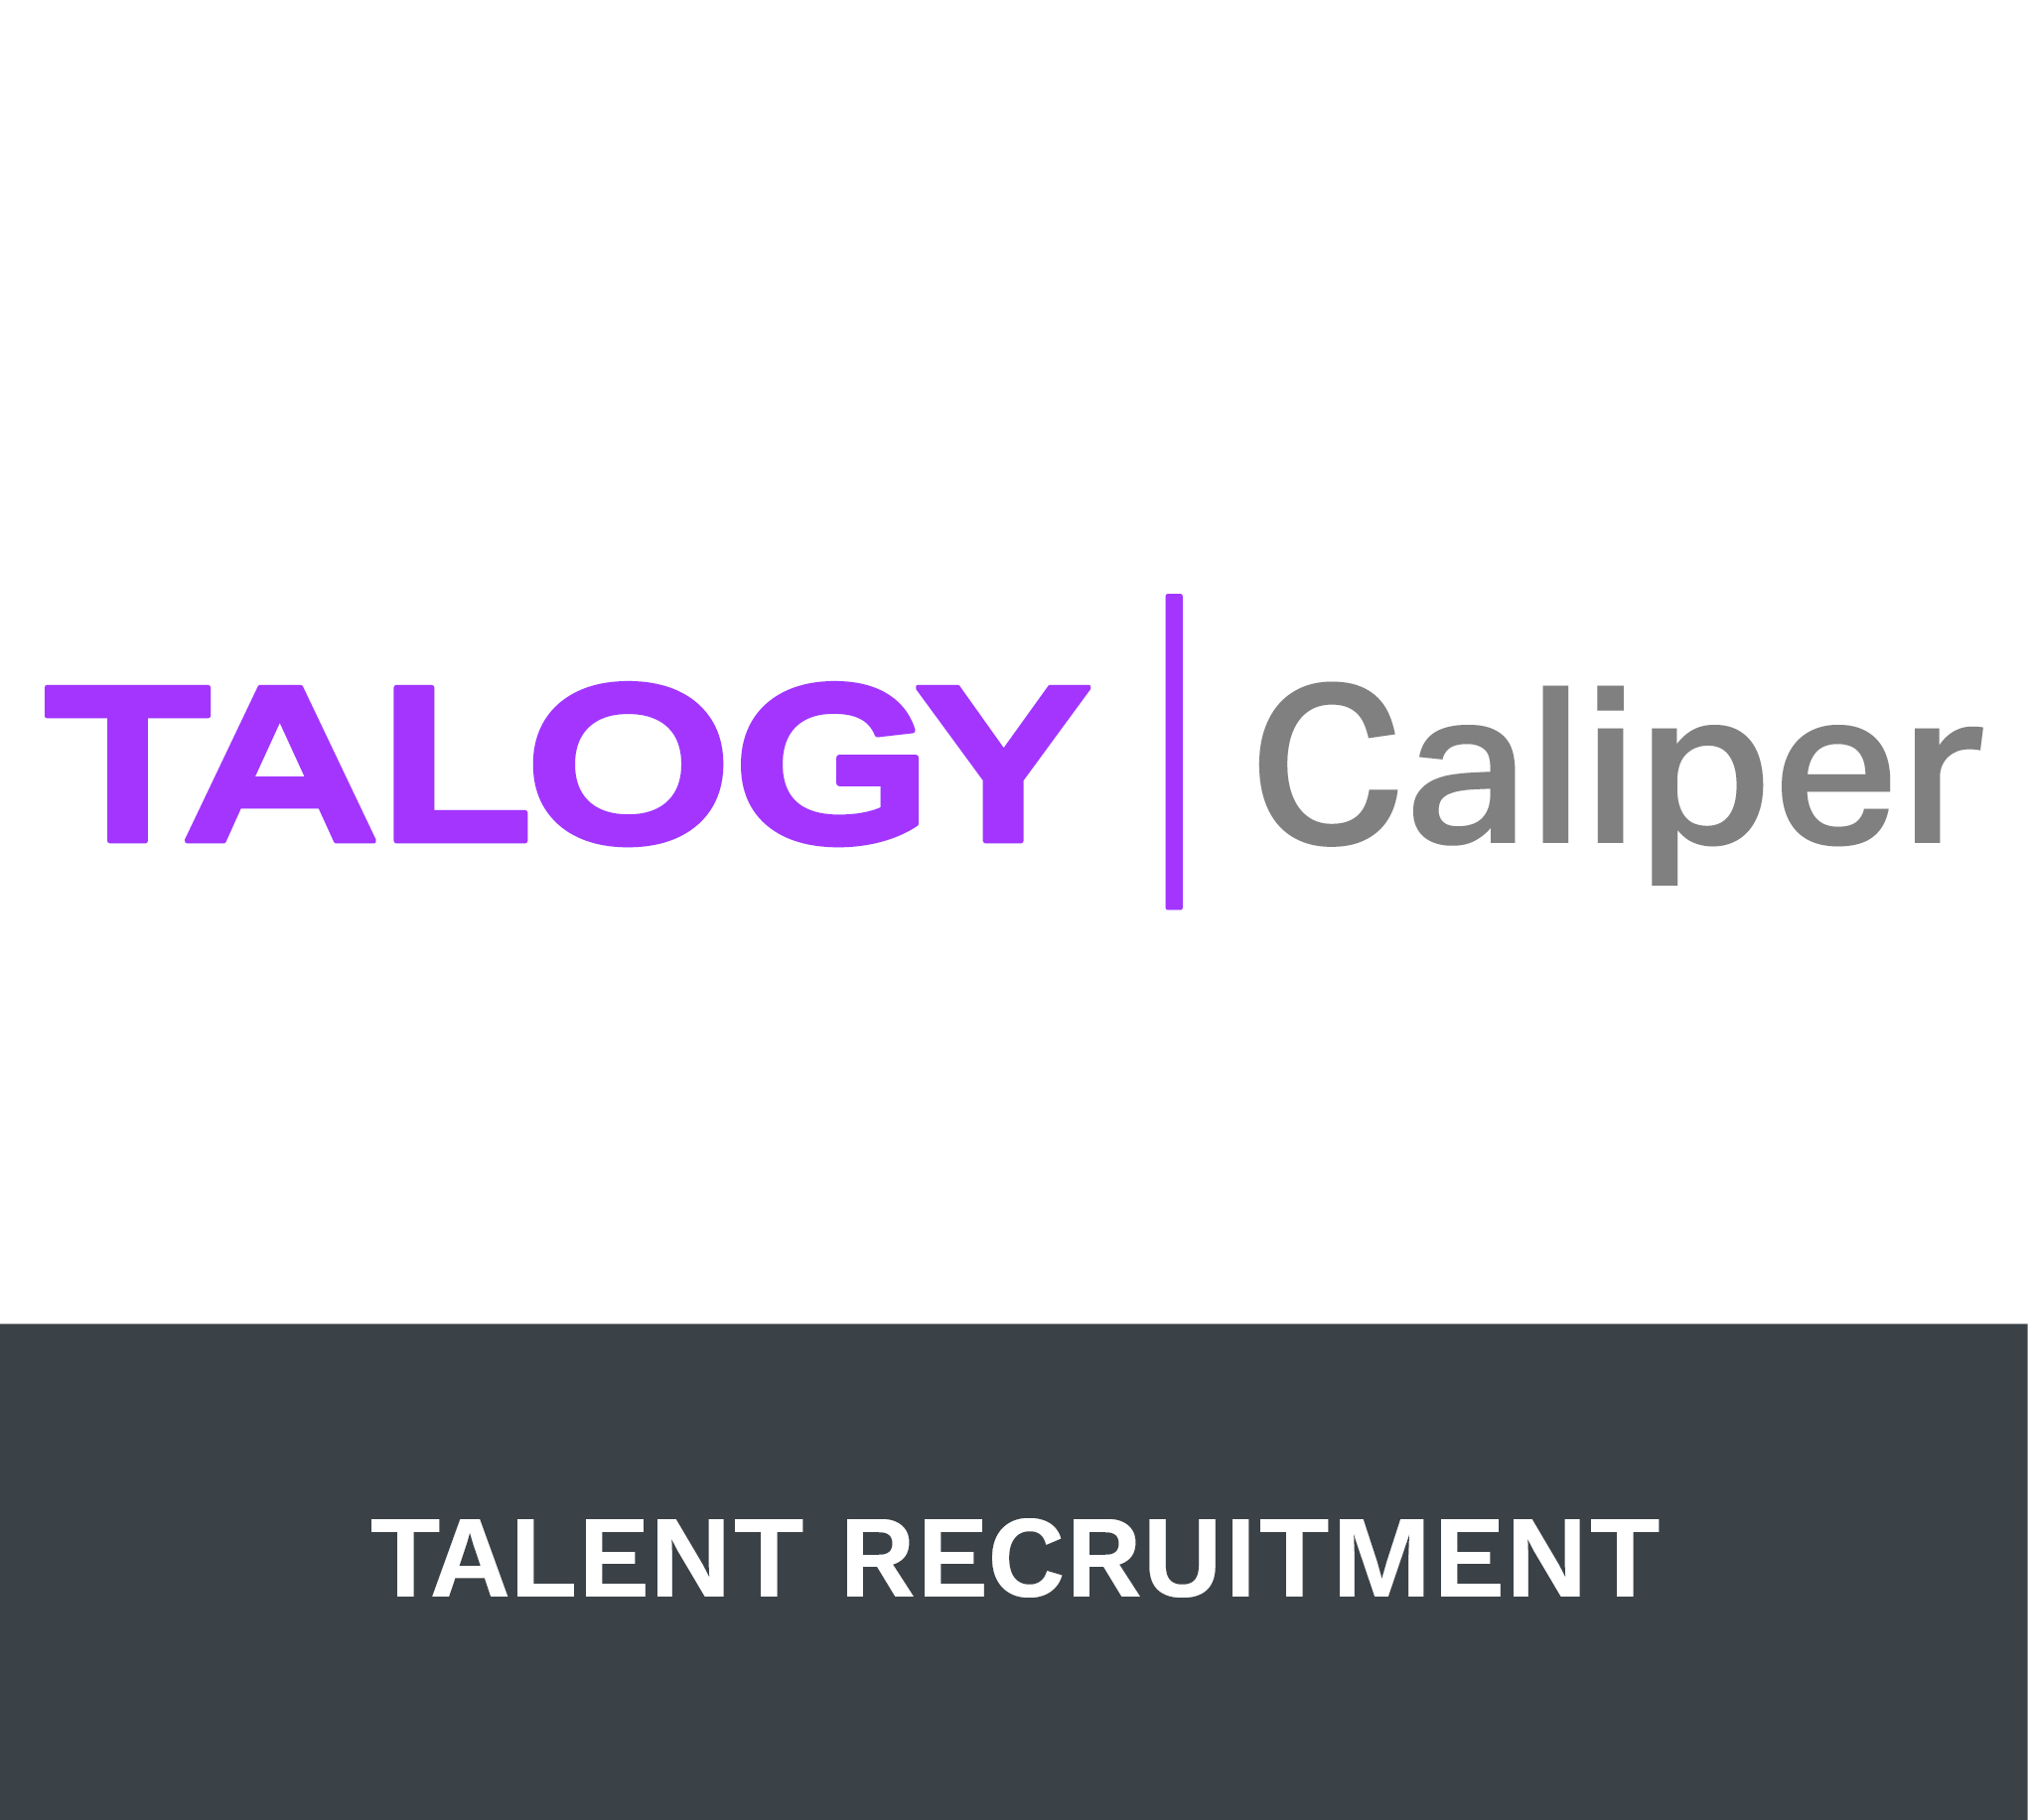 Talent Recruitment Tile